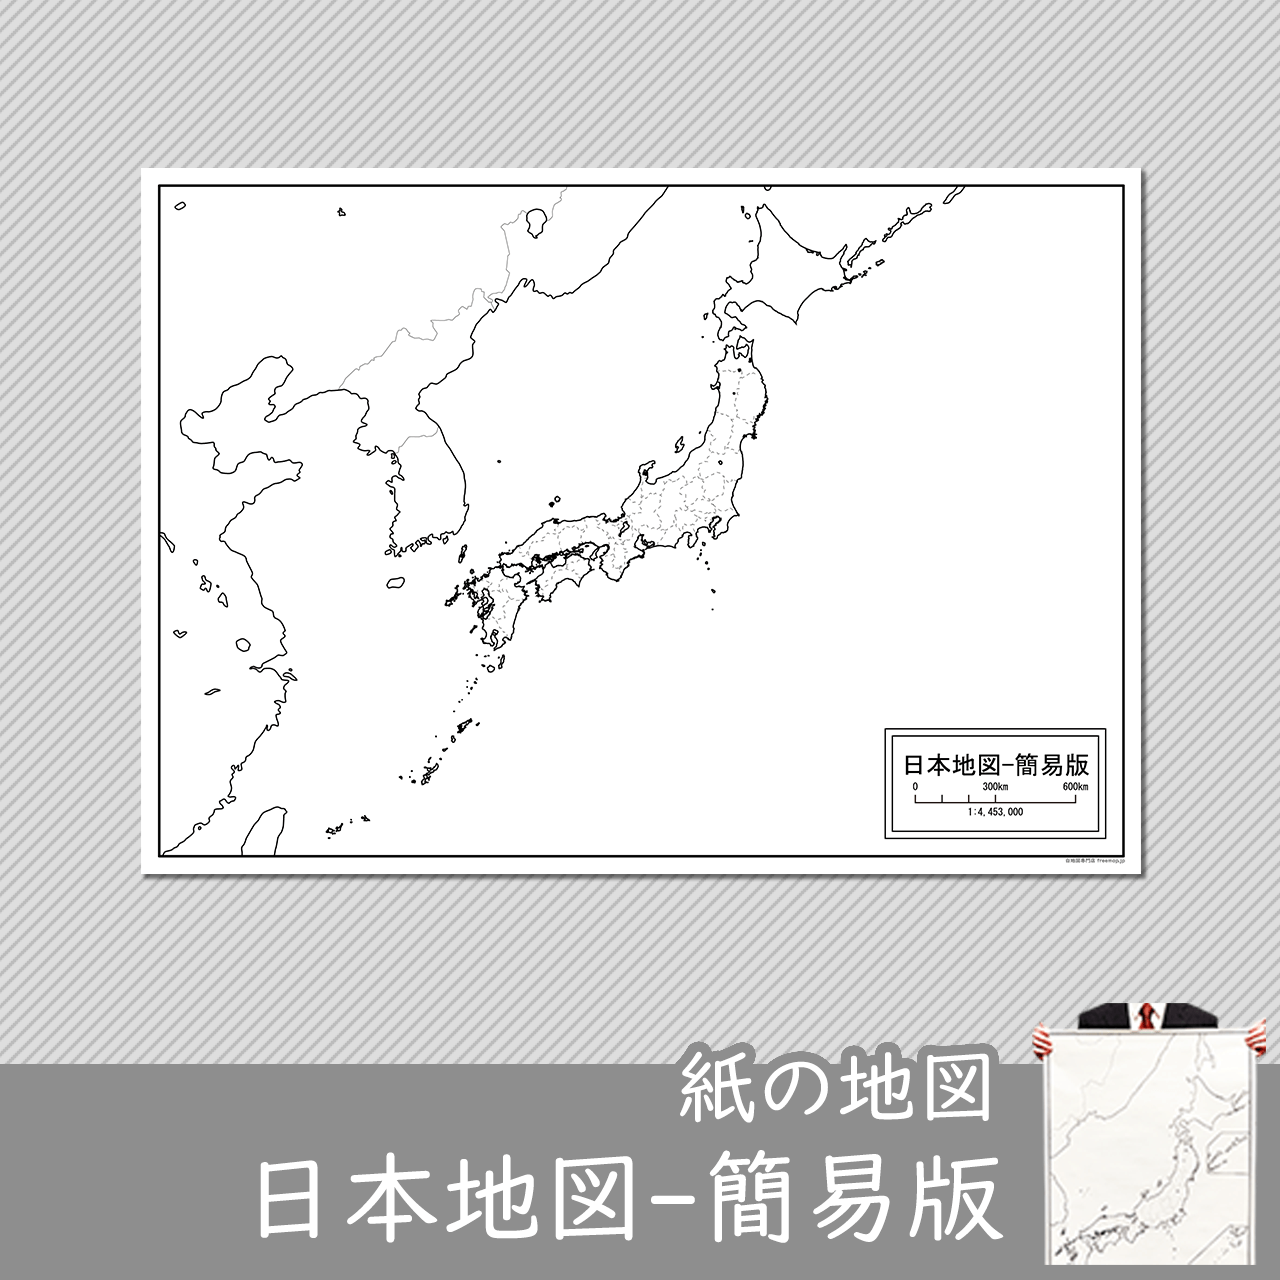 日本地図-簡易版の紙の白地図のサムネイル